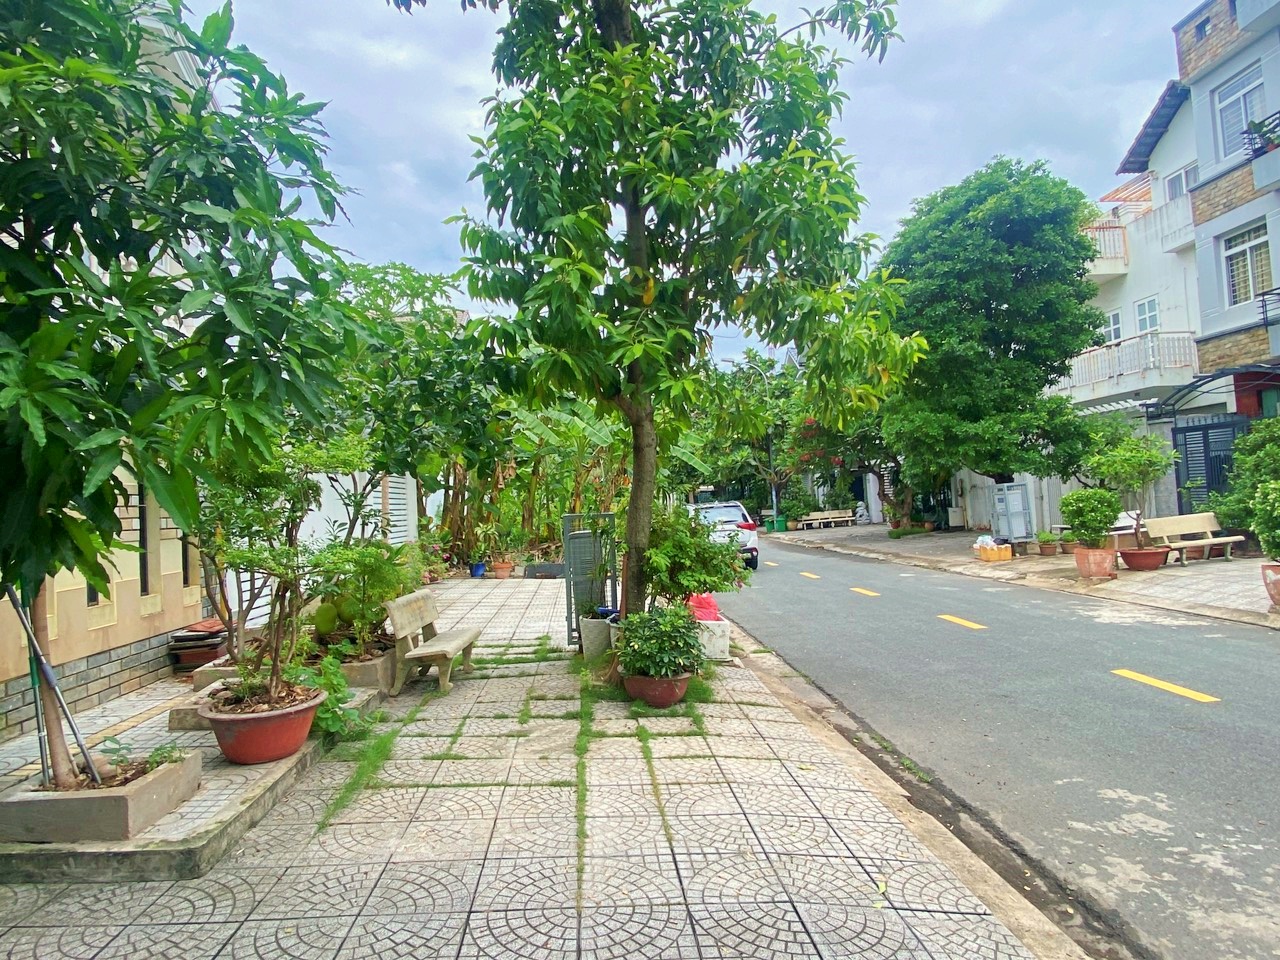 Bán Villa KDT Apak khu C cách Nguyễn Hoàng 100m , giá 35 tỷ TL khách thiện chí, bán nhà đi định cư nhé